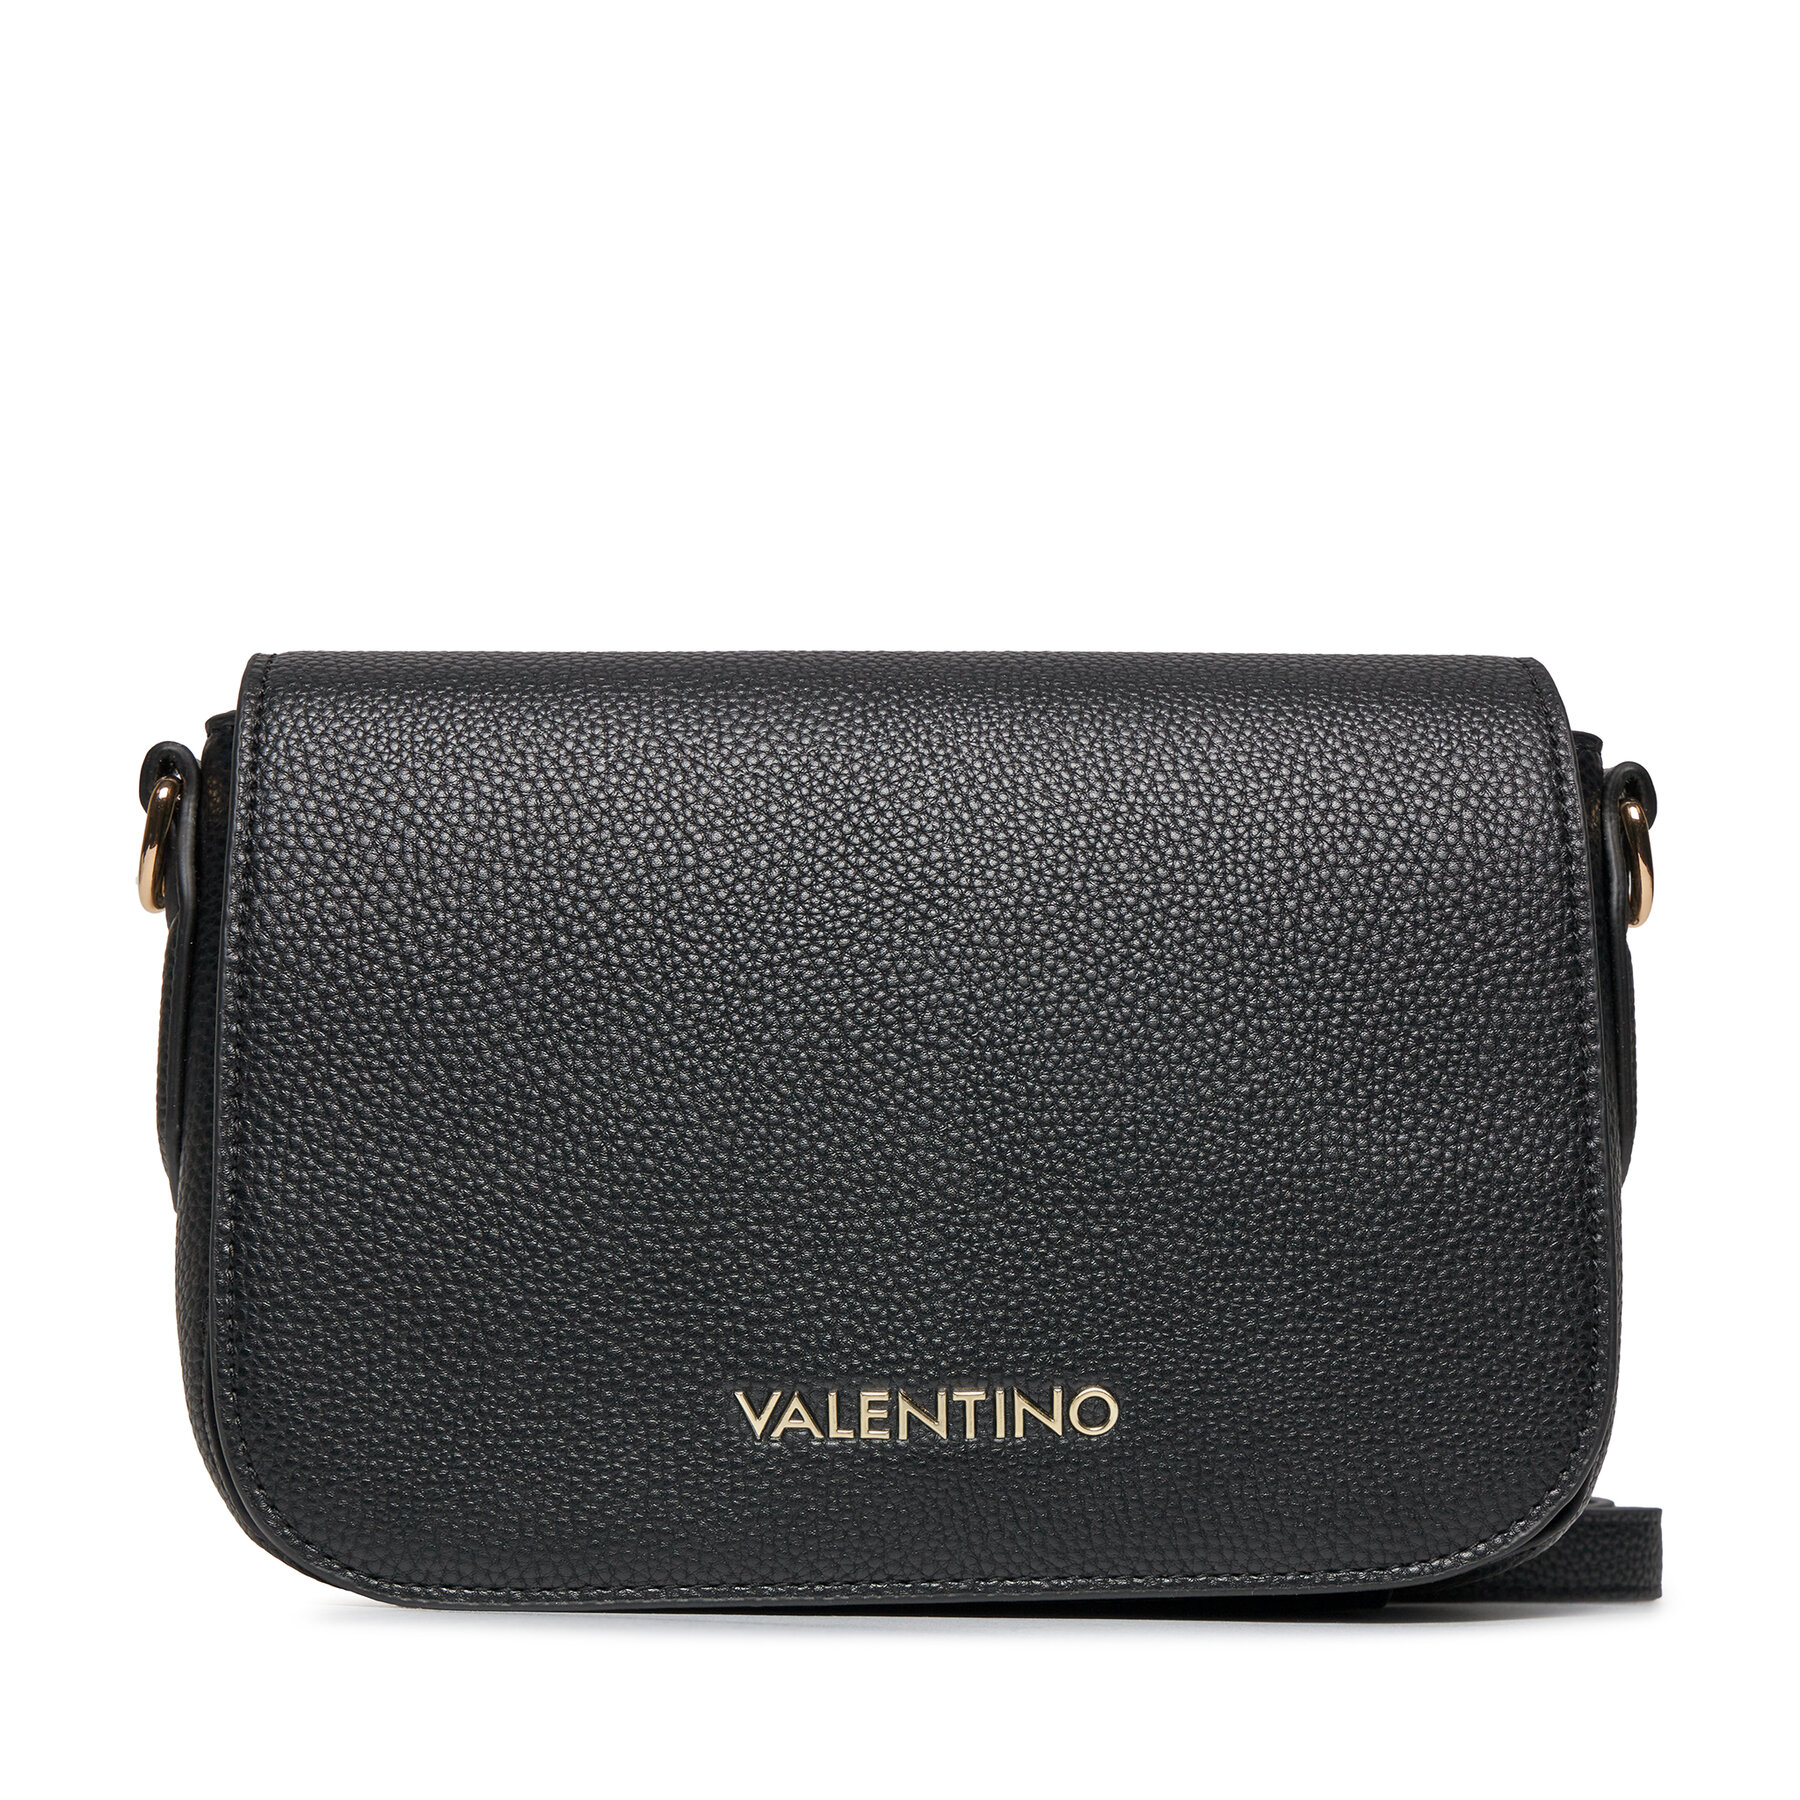 Handtasche Valentino Brixton VBS7LX08 Nero 001 von Valentino